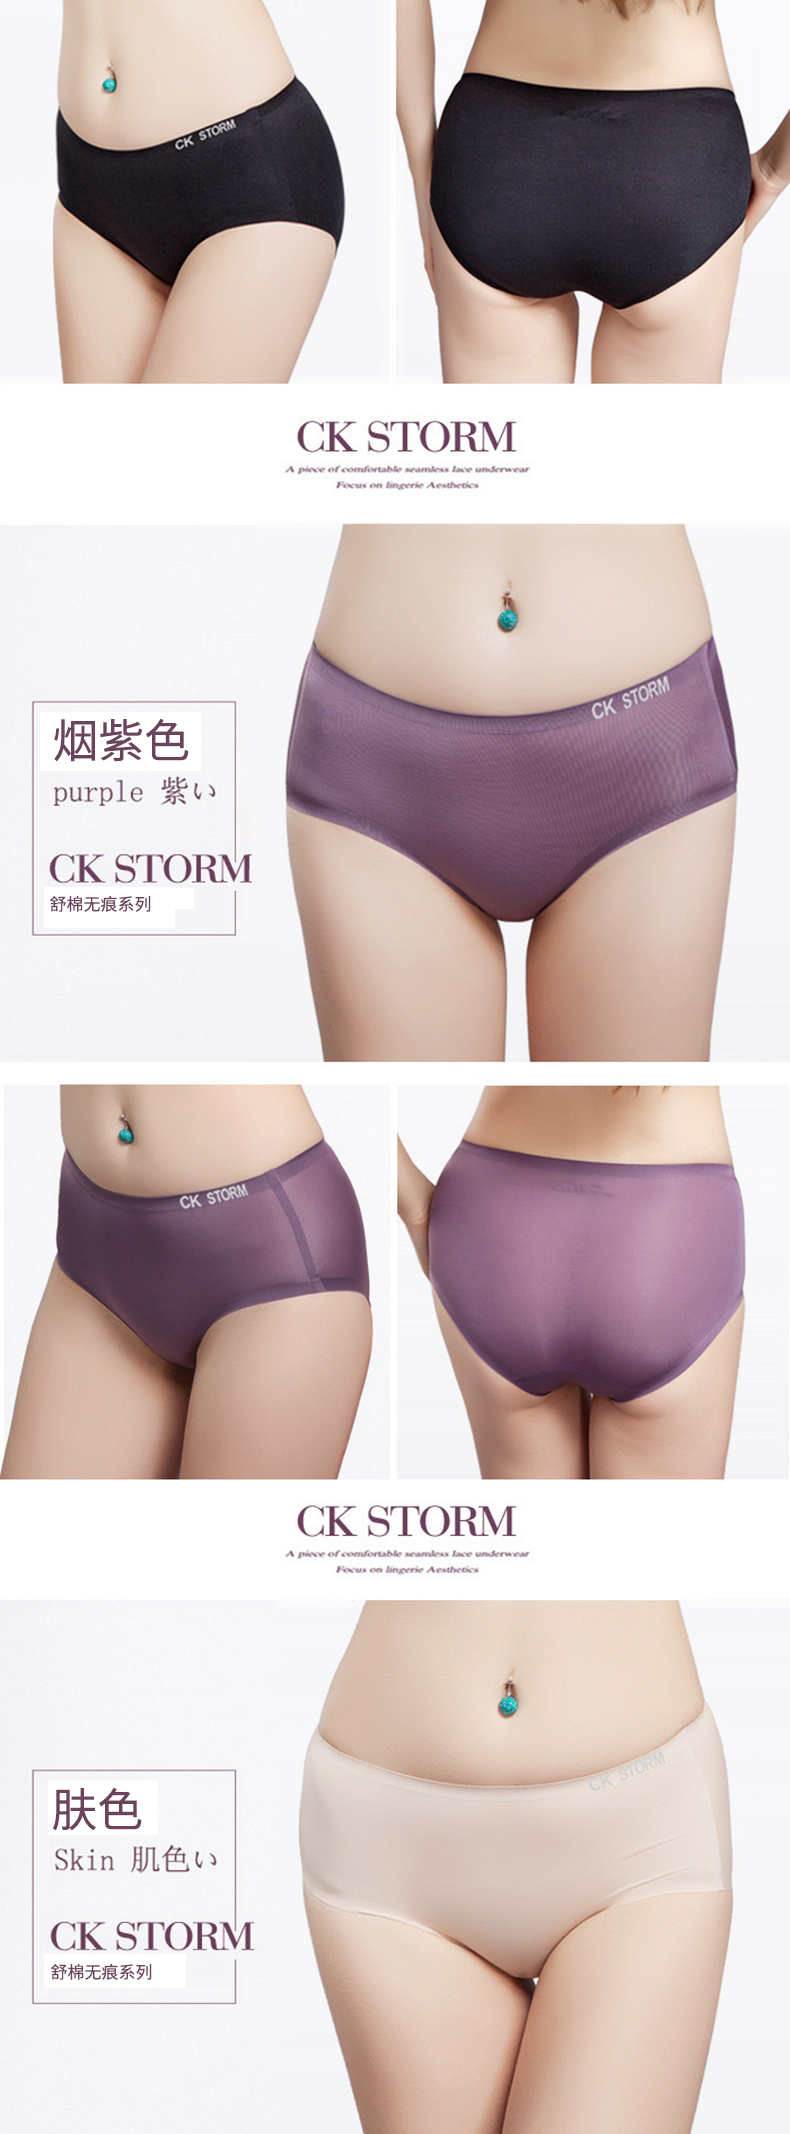 CK STORM 女式内裤 磨毛 三角裤 3条礼盒装